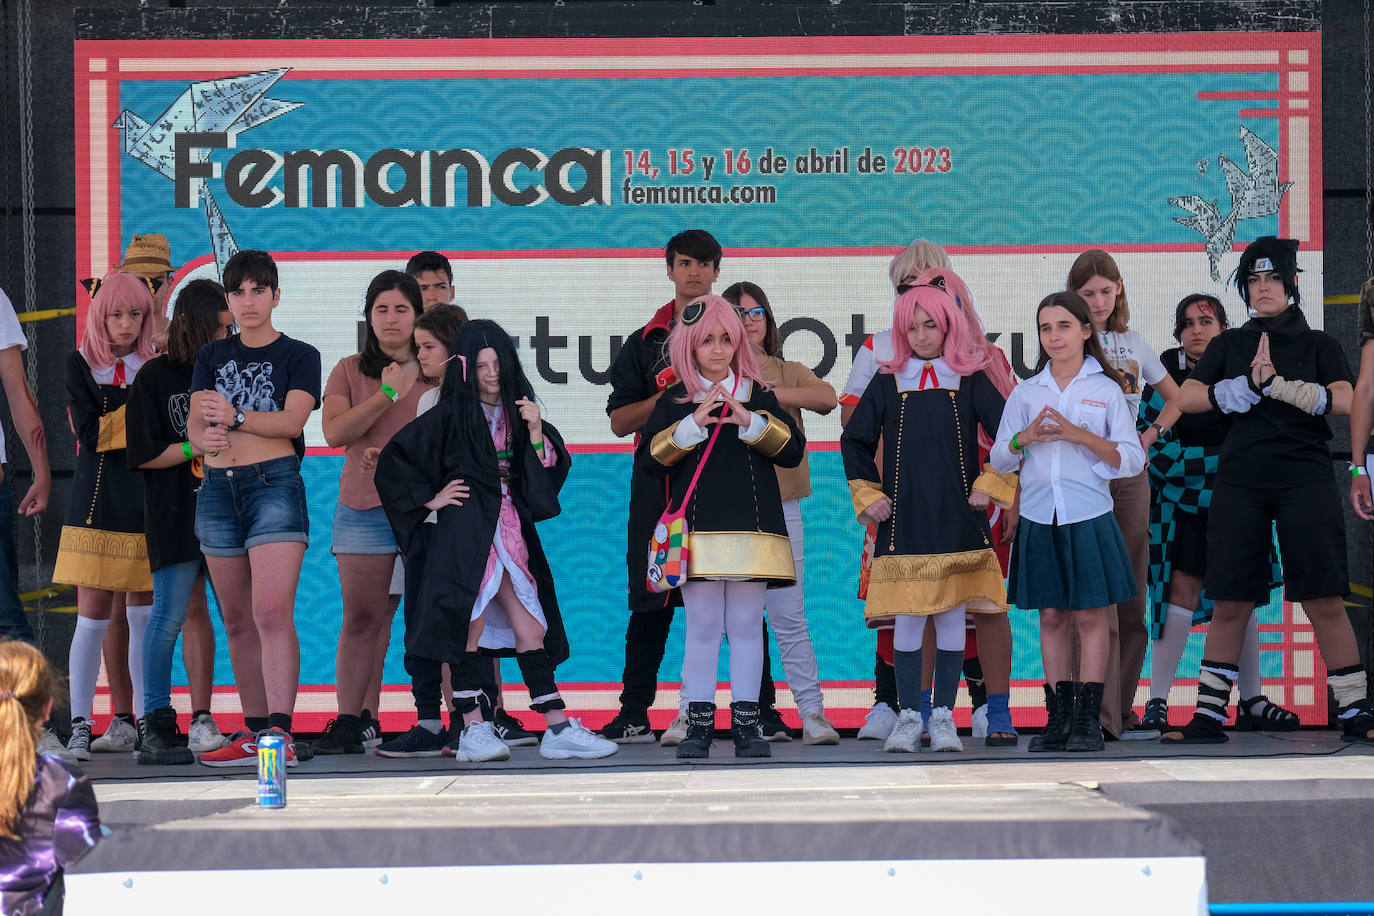 Las imágenes de la última jornada del Festival Manga de Cádiz